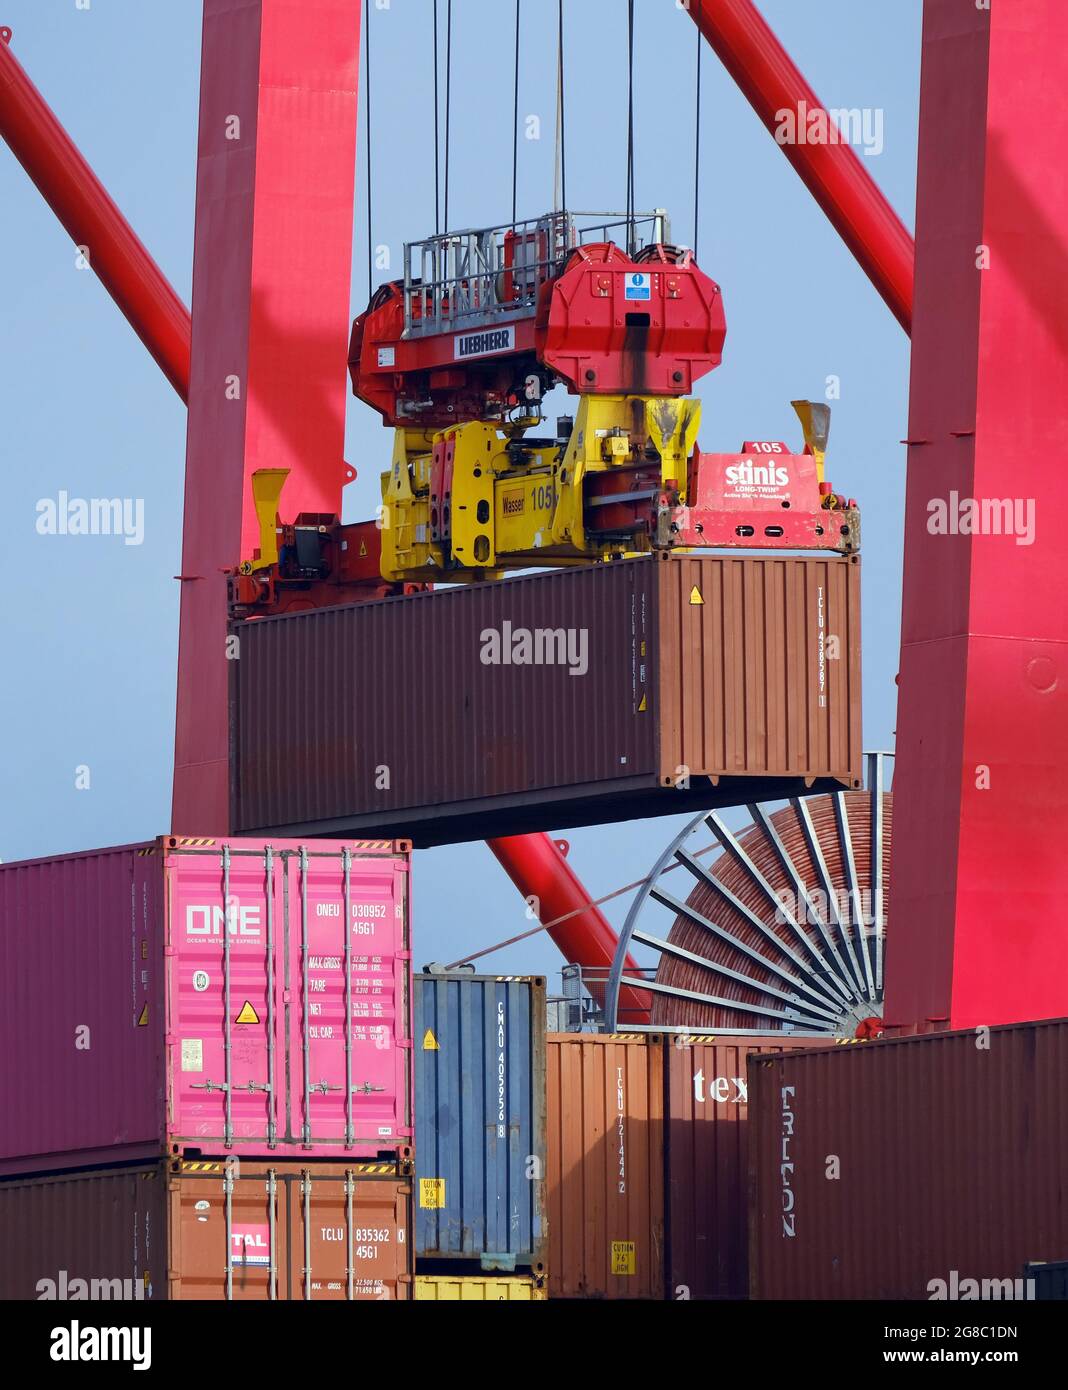 Amburgo, Germania - nave container nel porto di Amburgo, la nave container Nordsummer è ormeggiata presso il terminal dei container Eurogate. La lunghezza di 247 metri c Foto Stock